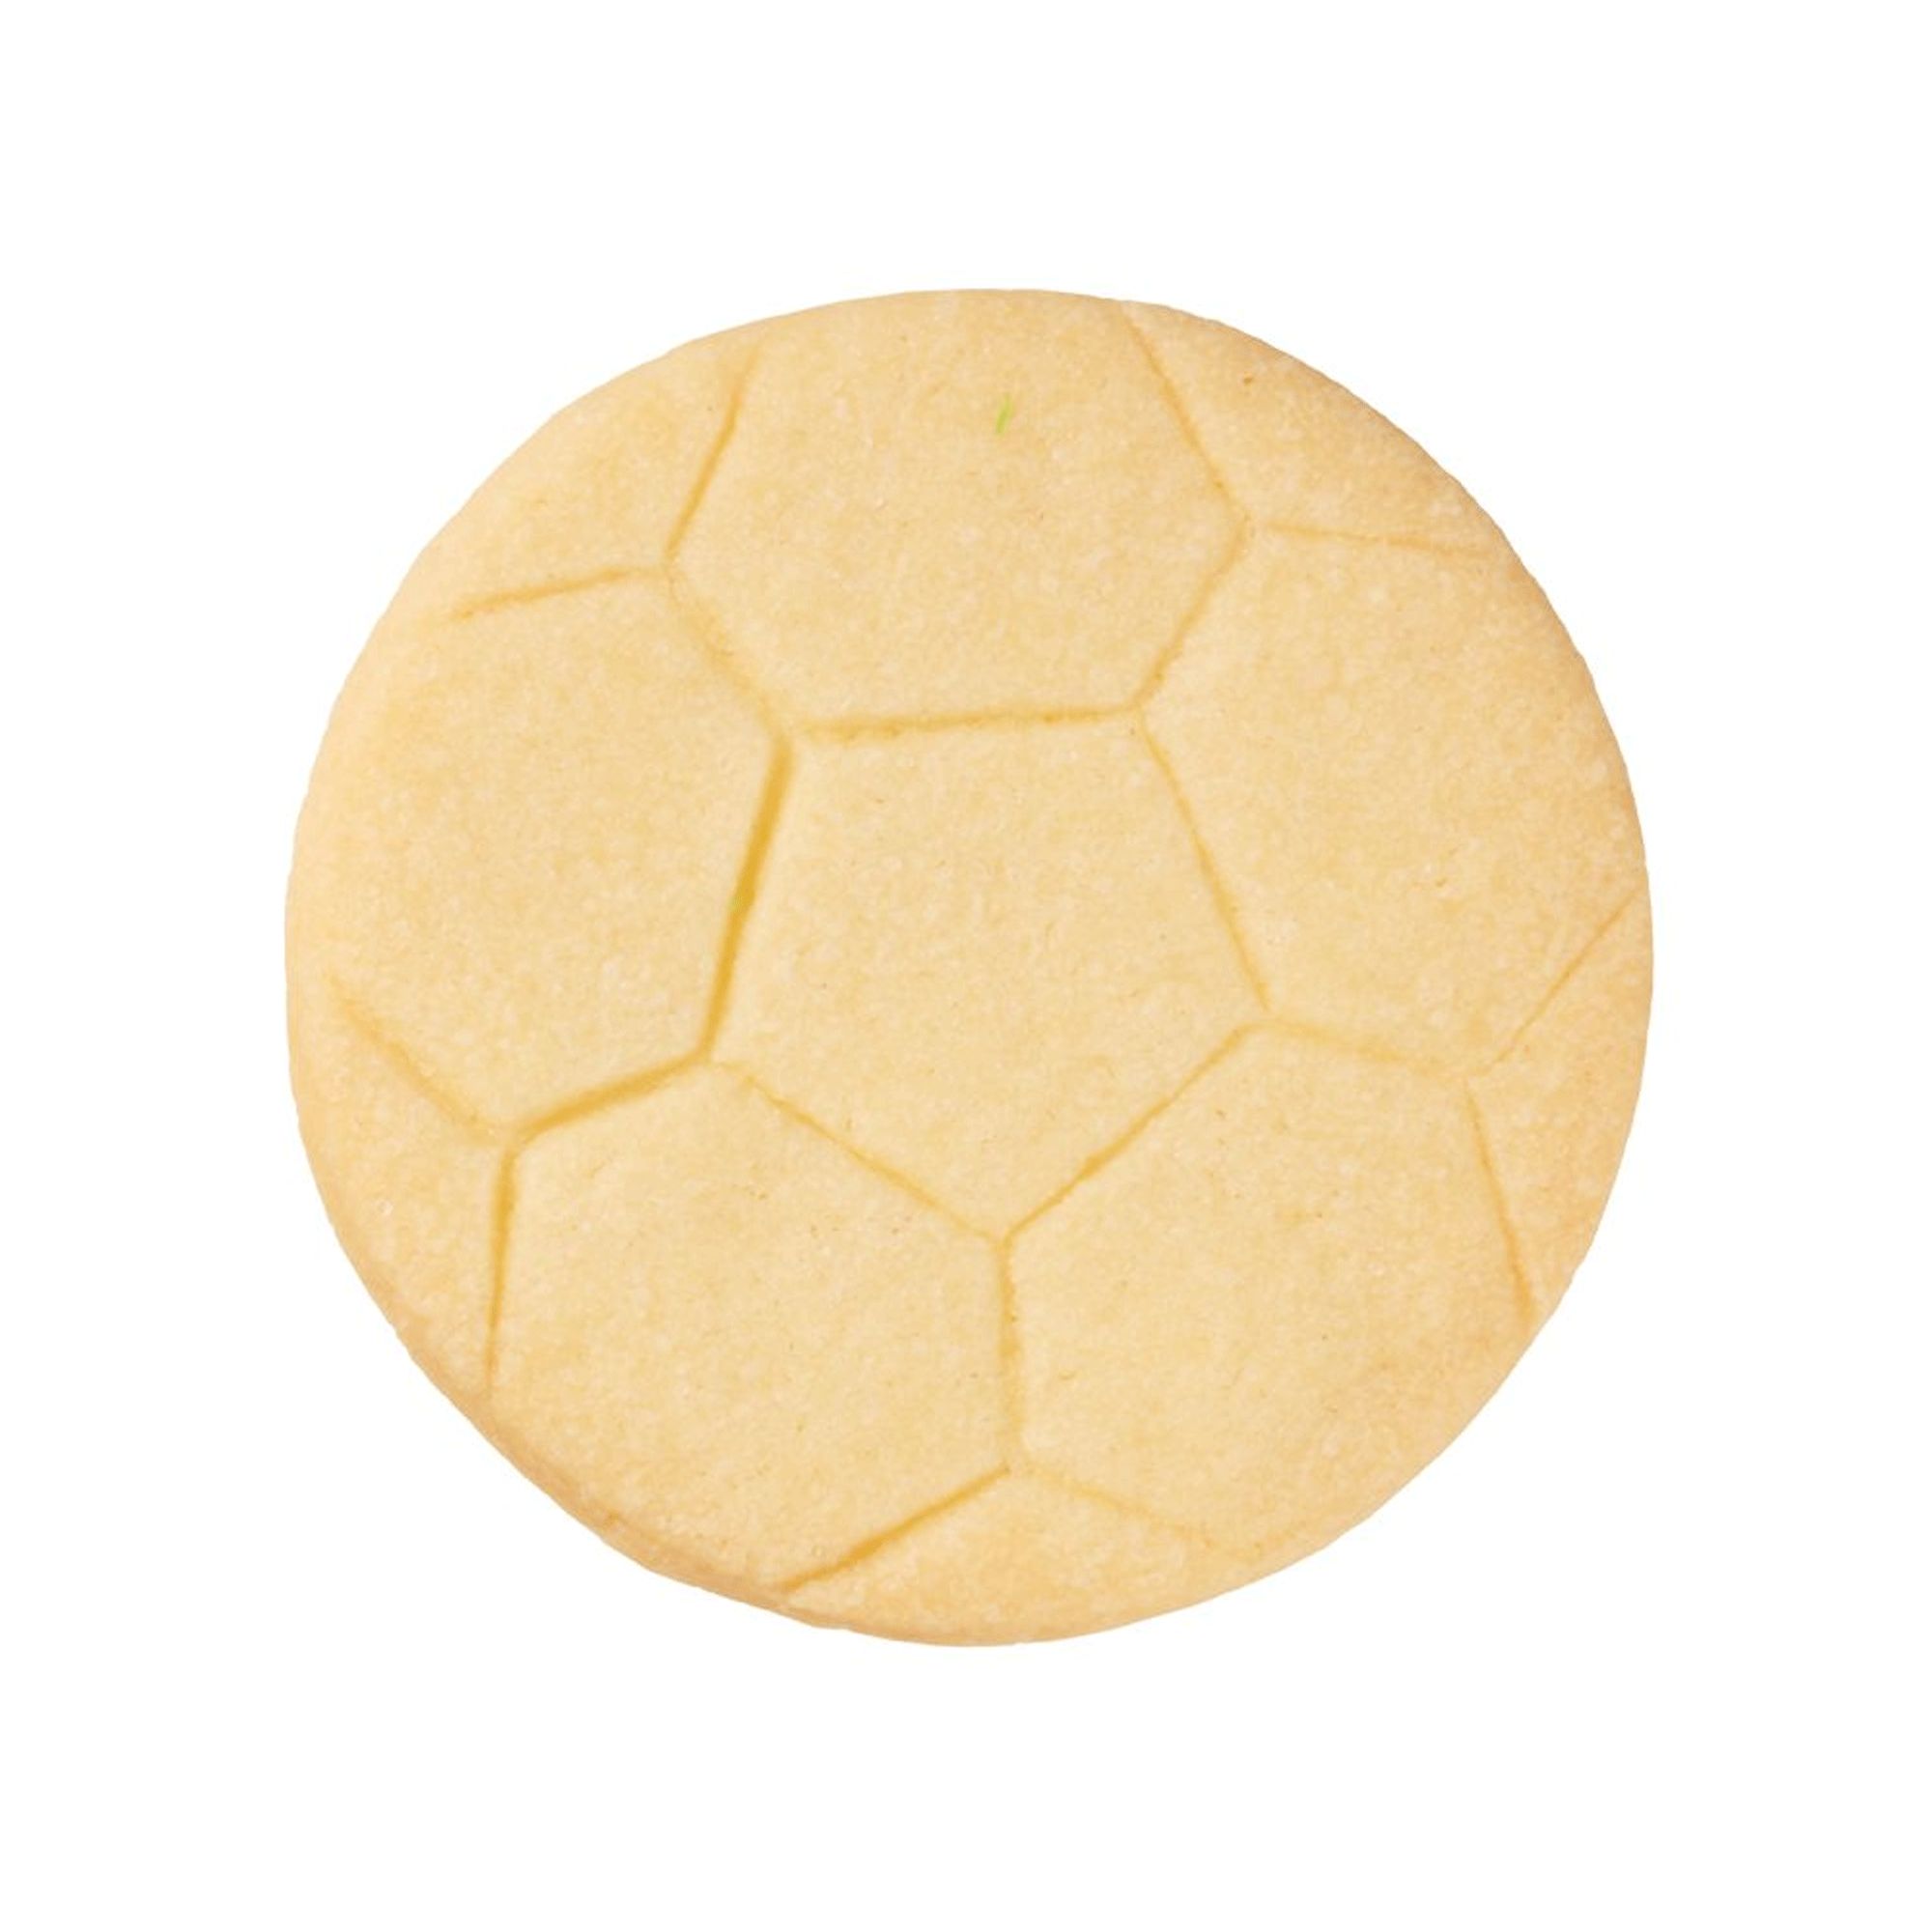 RBV Birkmann - Ausstechform Fußball groß 6,5 cm